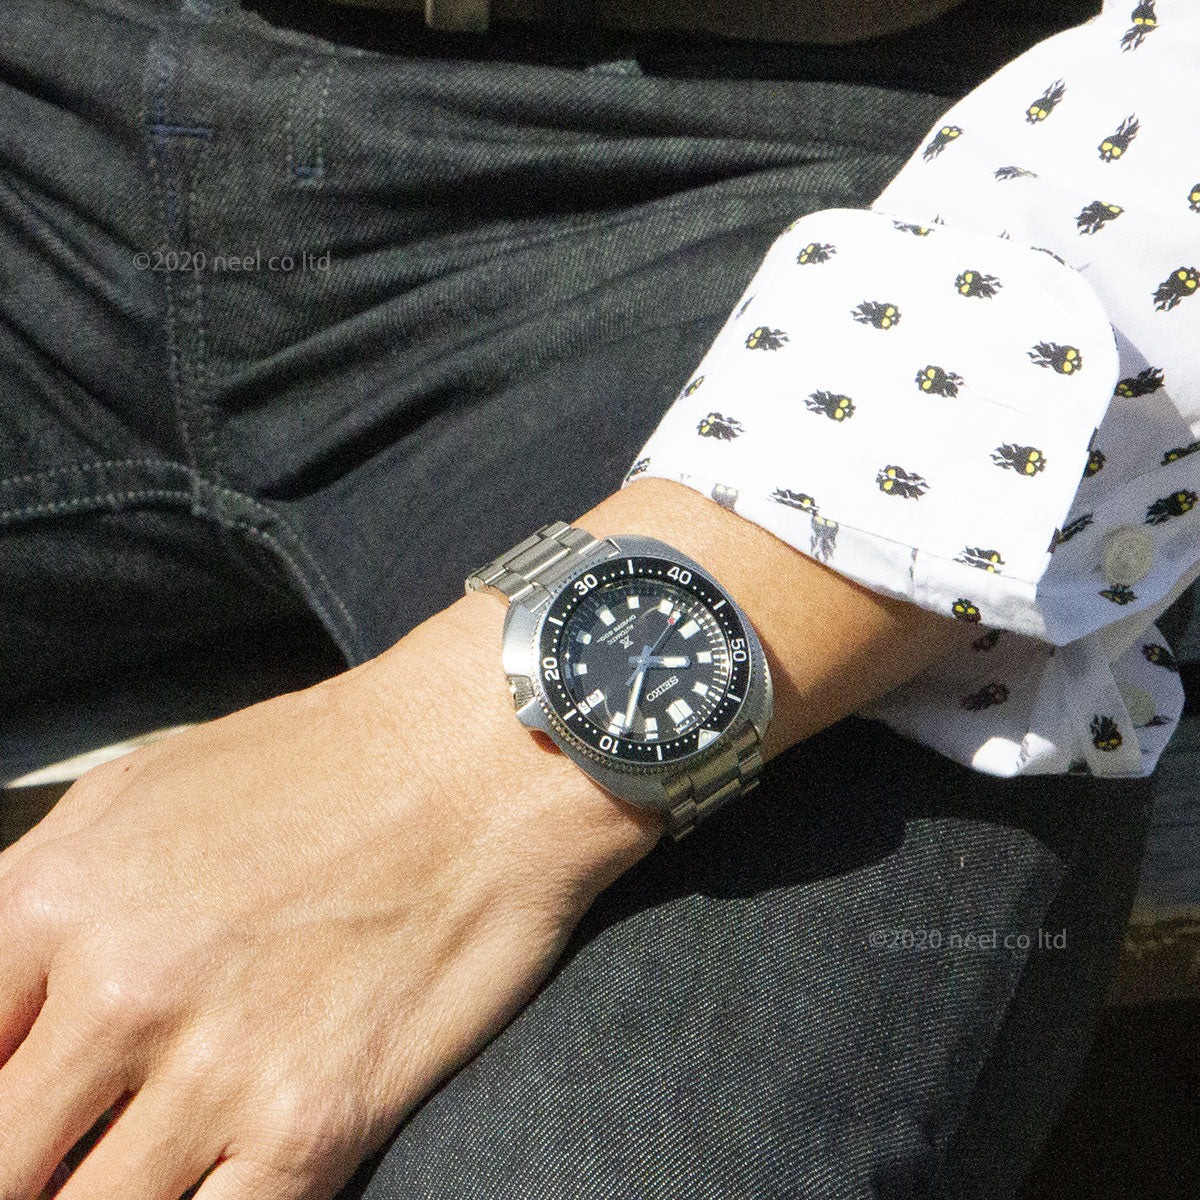 セイコー SEIKO 腕時計 メンズ SBDC109 プロスペックス ダイバースキューバ ヒストリカルコレクション 1970メカニカルダイバーズ 現代デザイン DIVER SCUBA 自動巻き（6R35/手巻き付） ブラックxシルバー アナログ表示